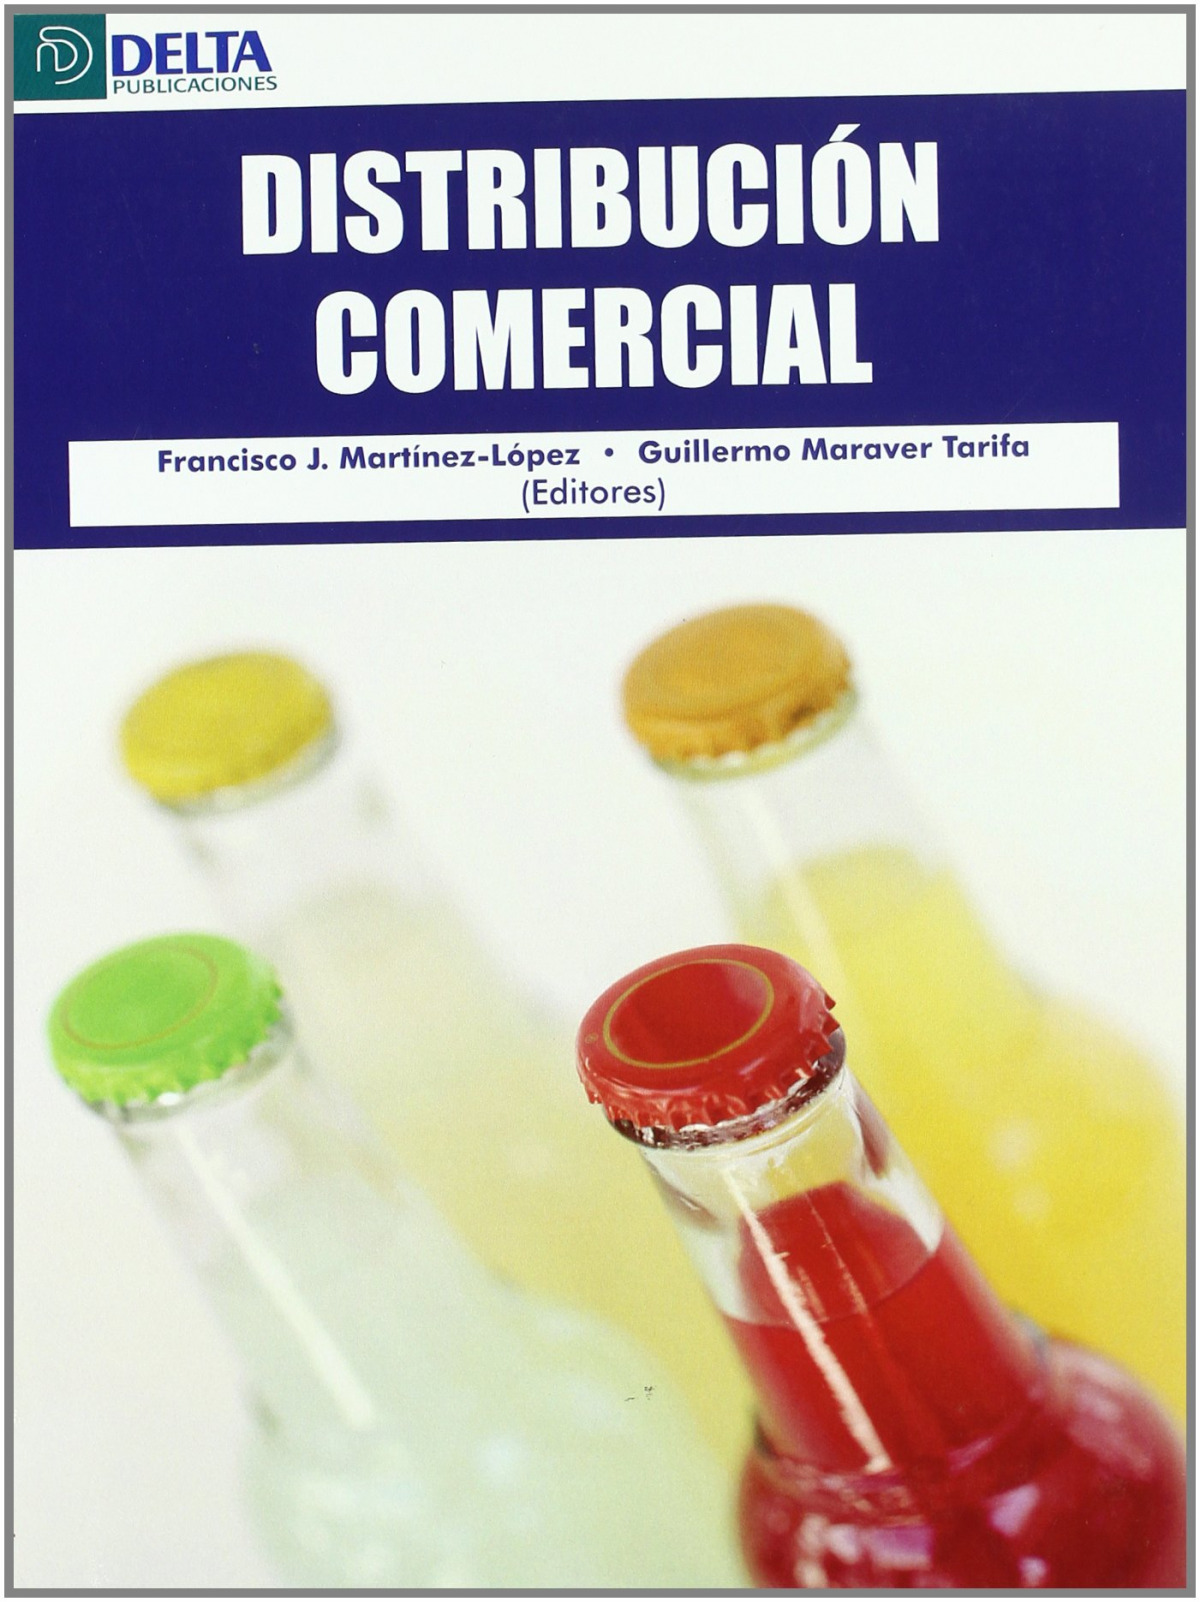 Imagen de portada del libro Distribución comercial